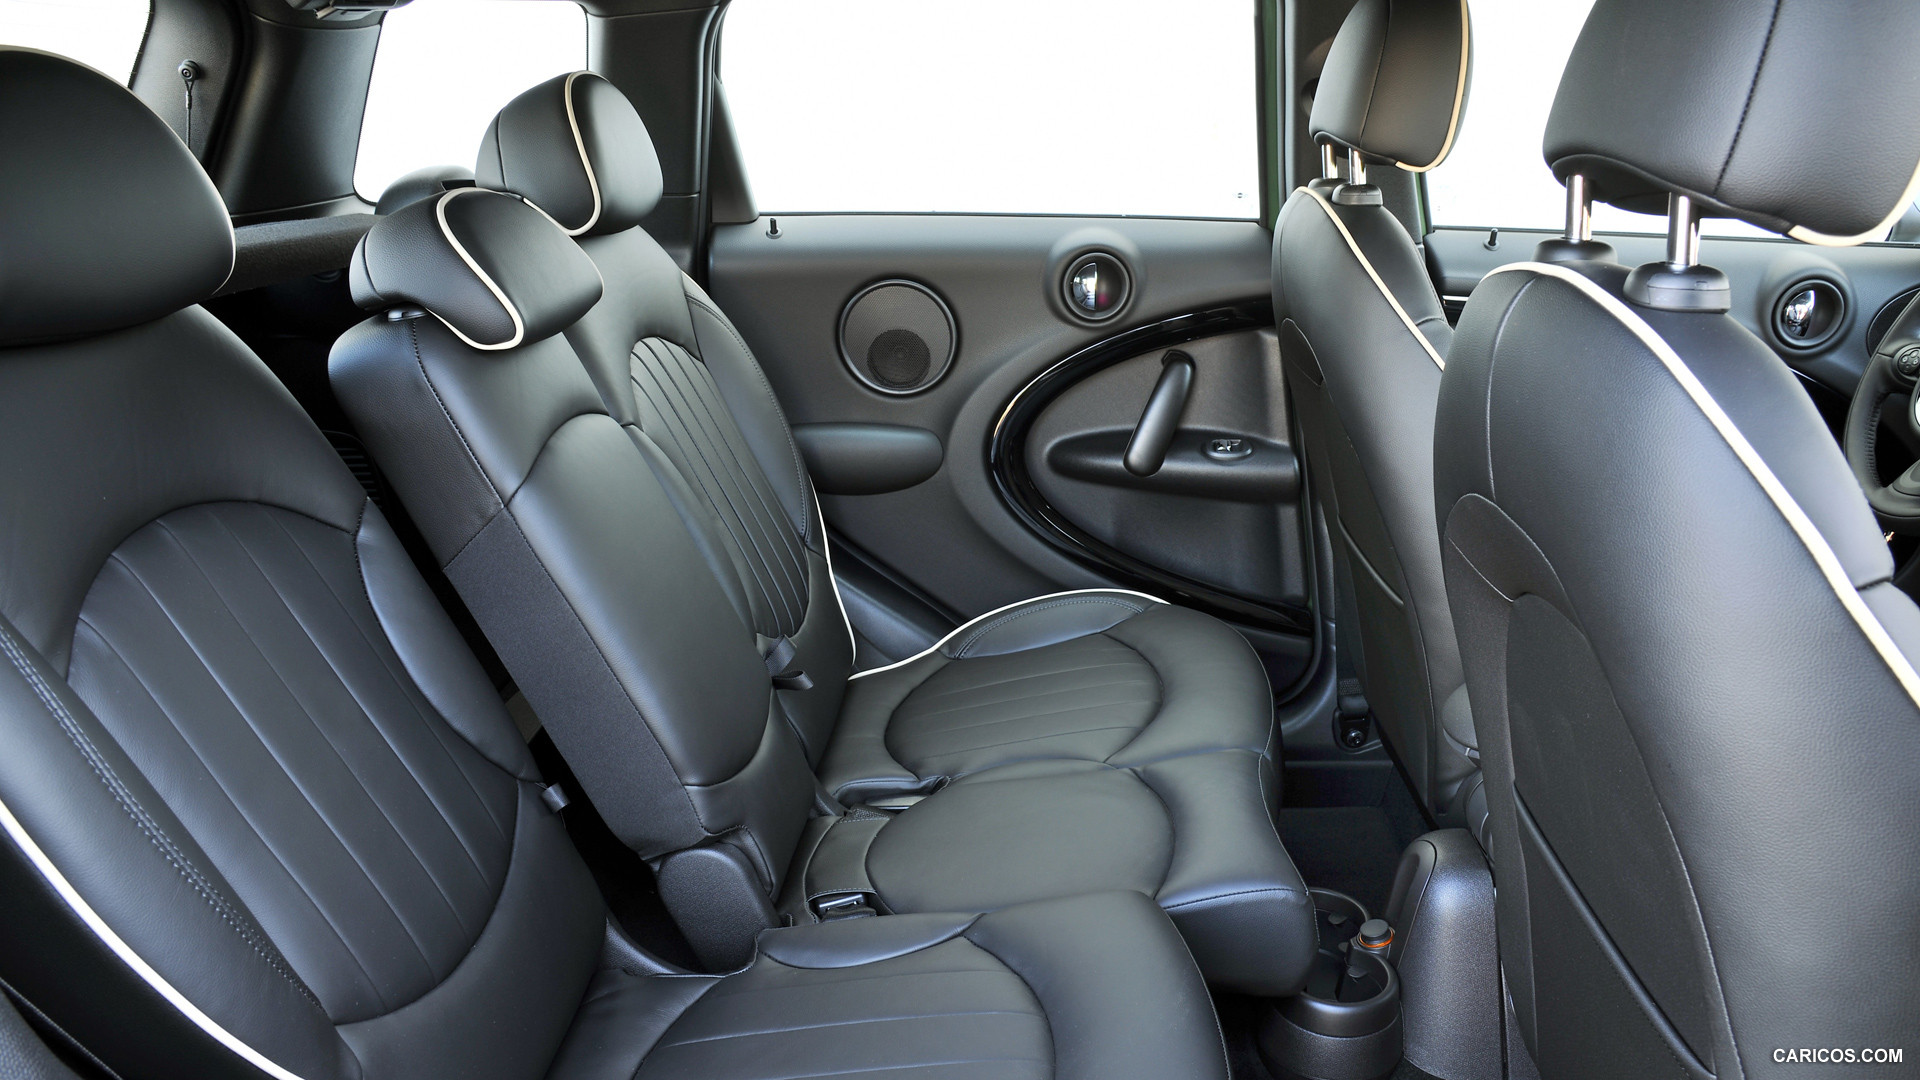 2015 MINI Cooper S Countryman  - Interior Rear Seats, #198 of 291